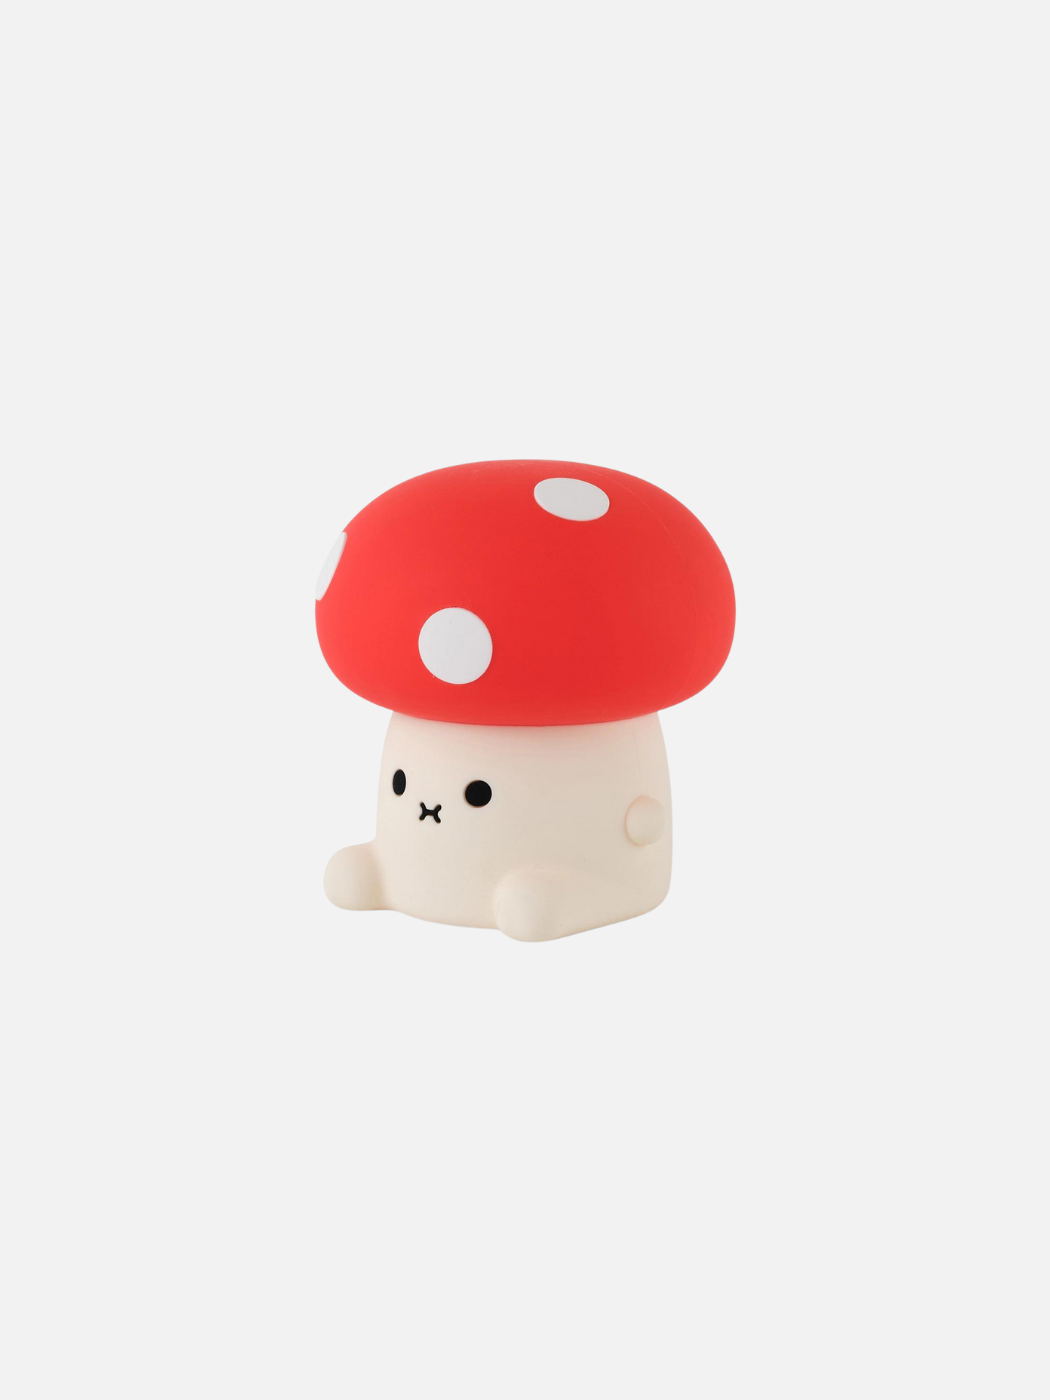 Ricemogu Little Light Mushroom